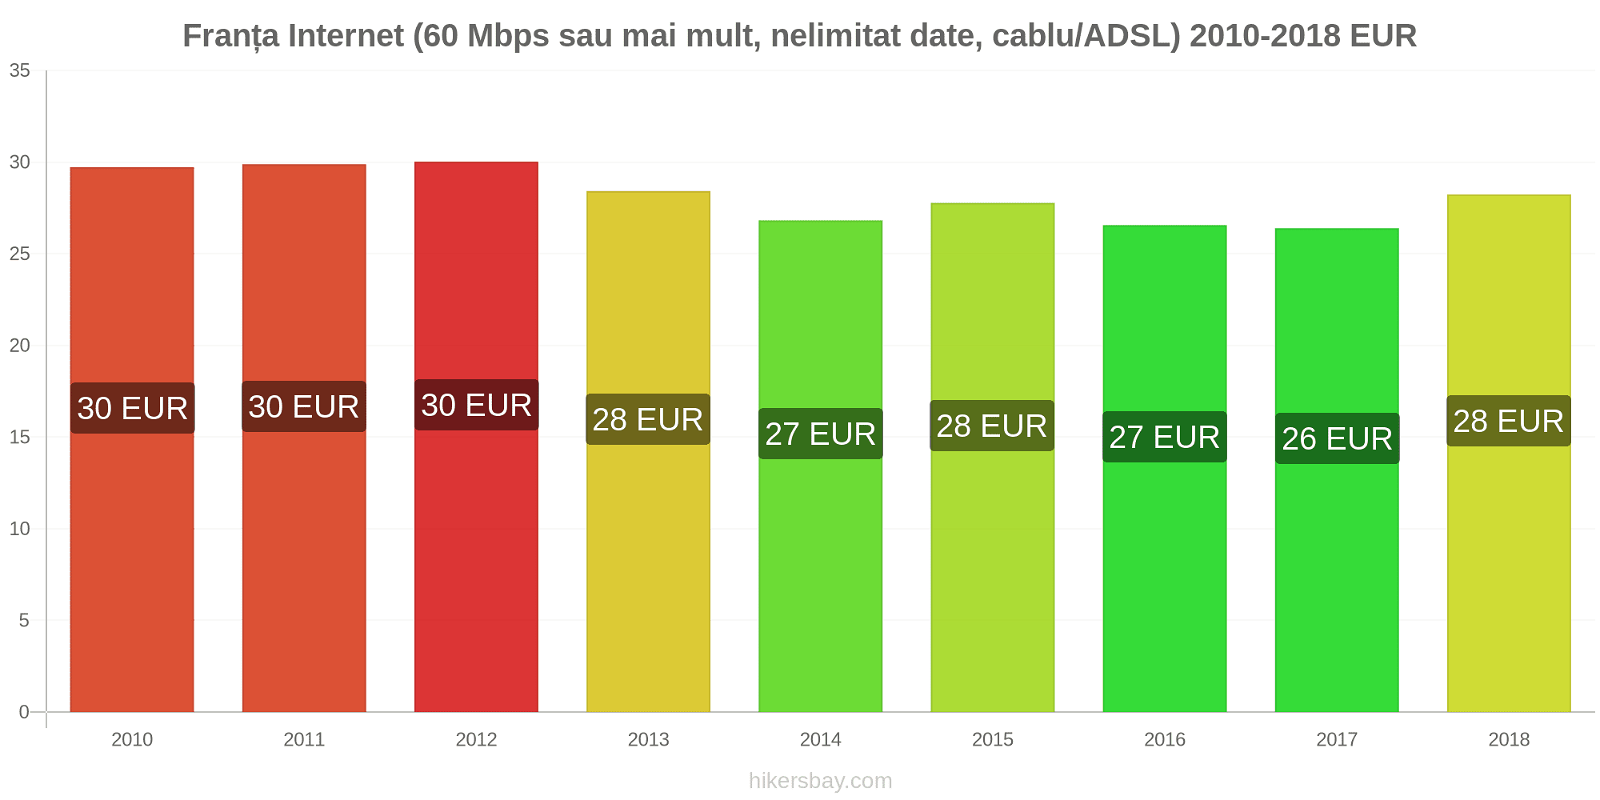 Franța schimbări de prețuri Internet (60 Mbps sau mai mult, date nelimitate, cablu/ADSL) hikersbay.com